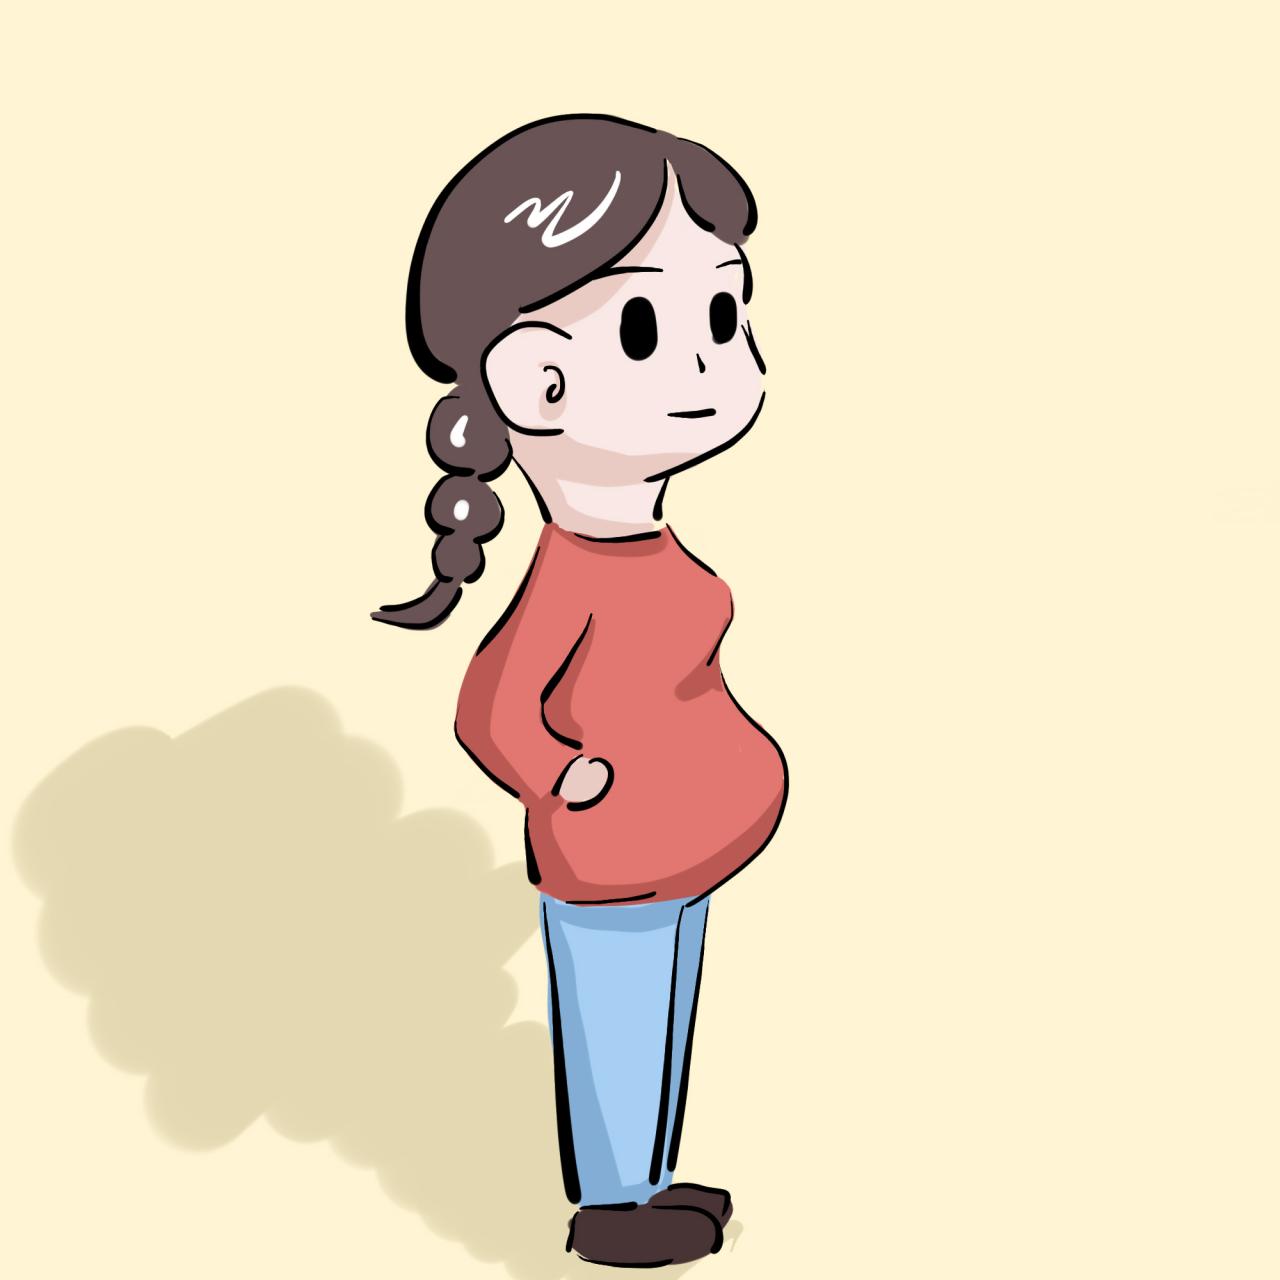 3、怀孕都是女儿的原因:我老婆怀孕，四次都是女儿，怎么回事啊？